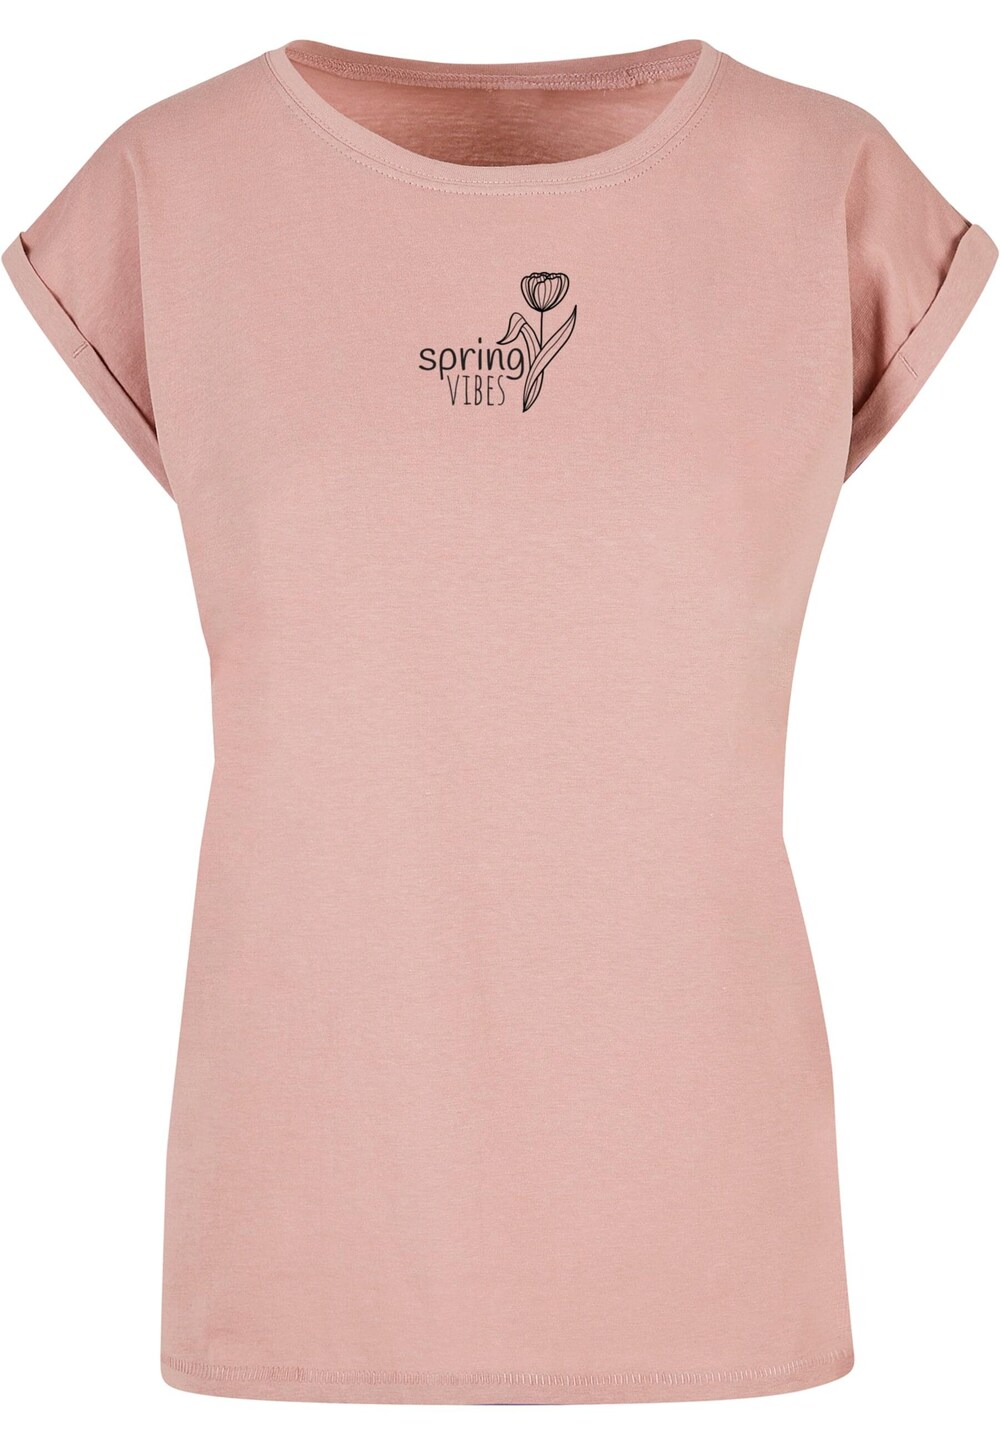 Рубашка Merchcode Spring - Vibes, темно-розовый